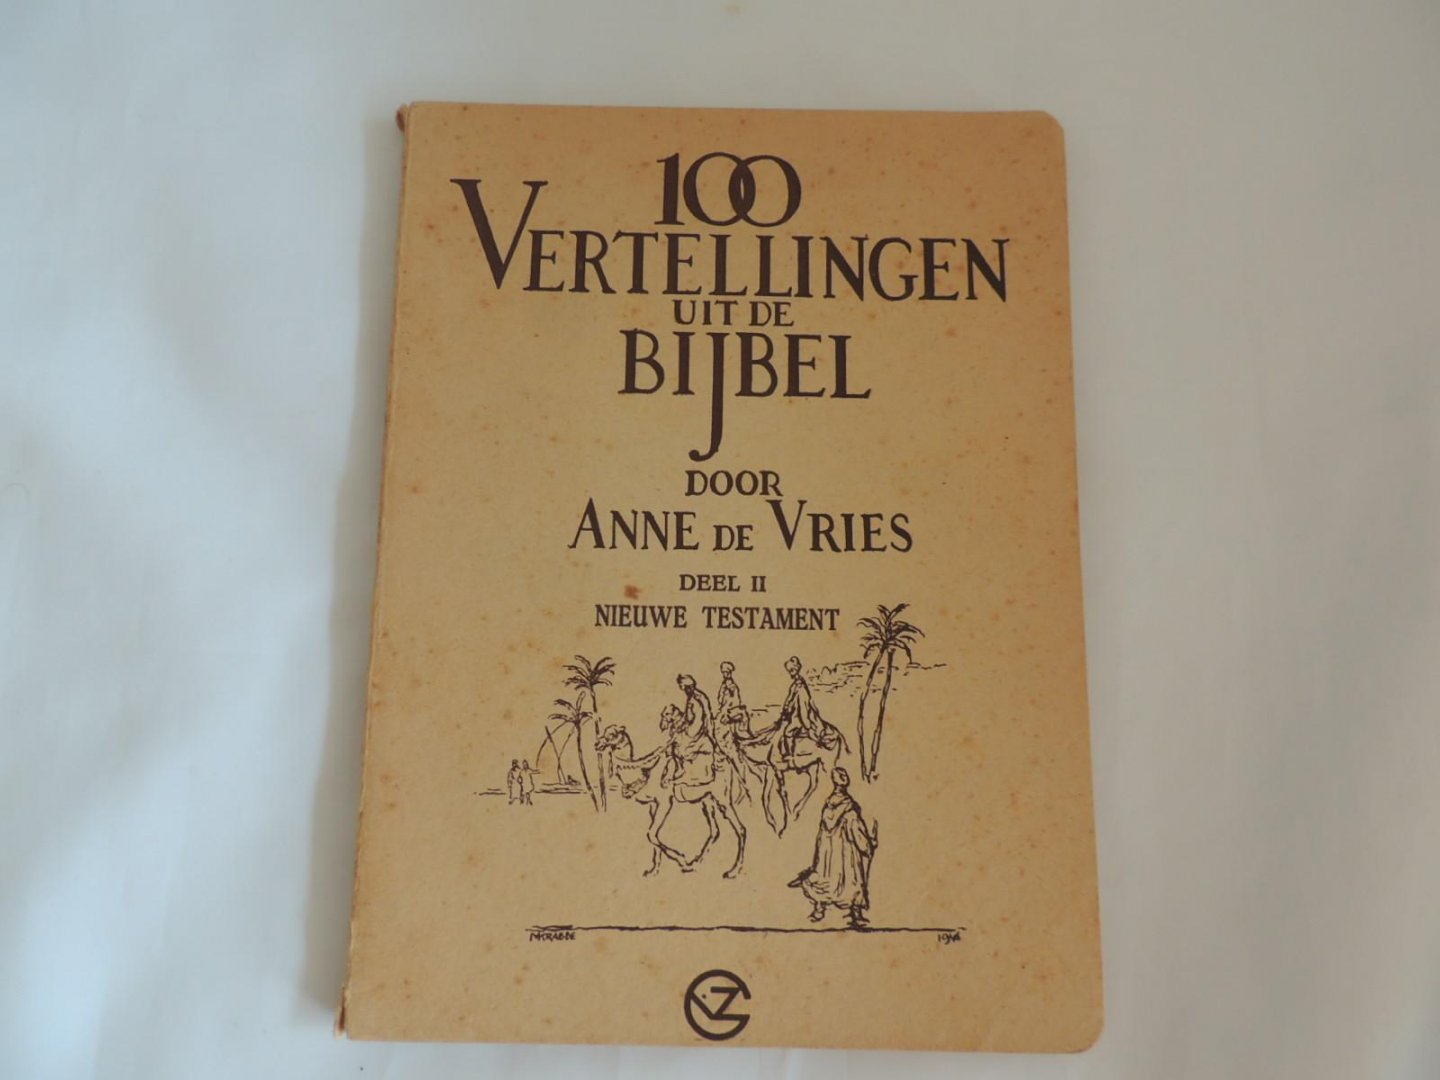 Anne de Vries; Maarten Krabbé; - 100 vertellingen uit de bijbel - Honderd vertellingen uit de bijbel - tweede deel II 2 het nieuwe testament